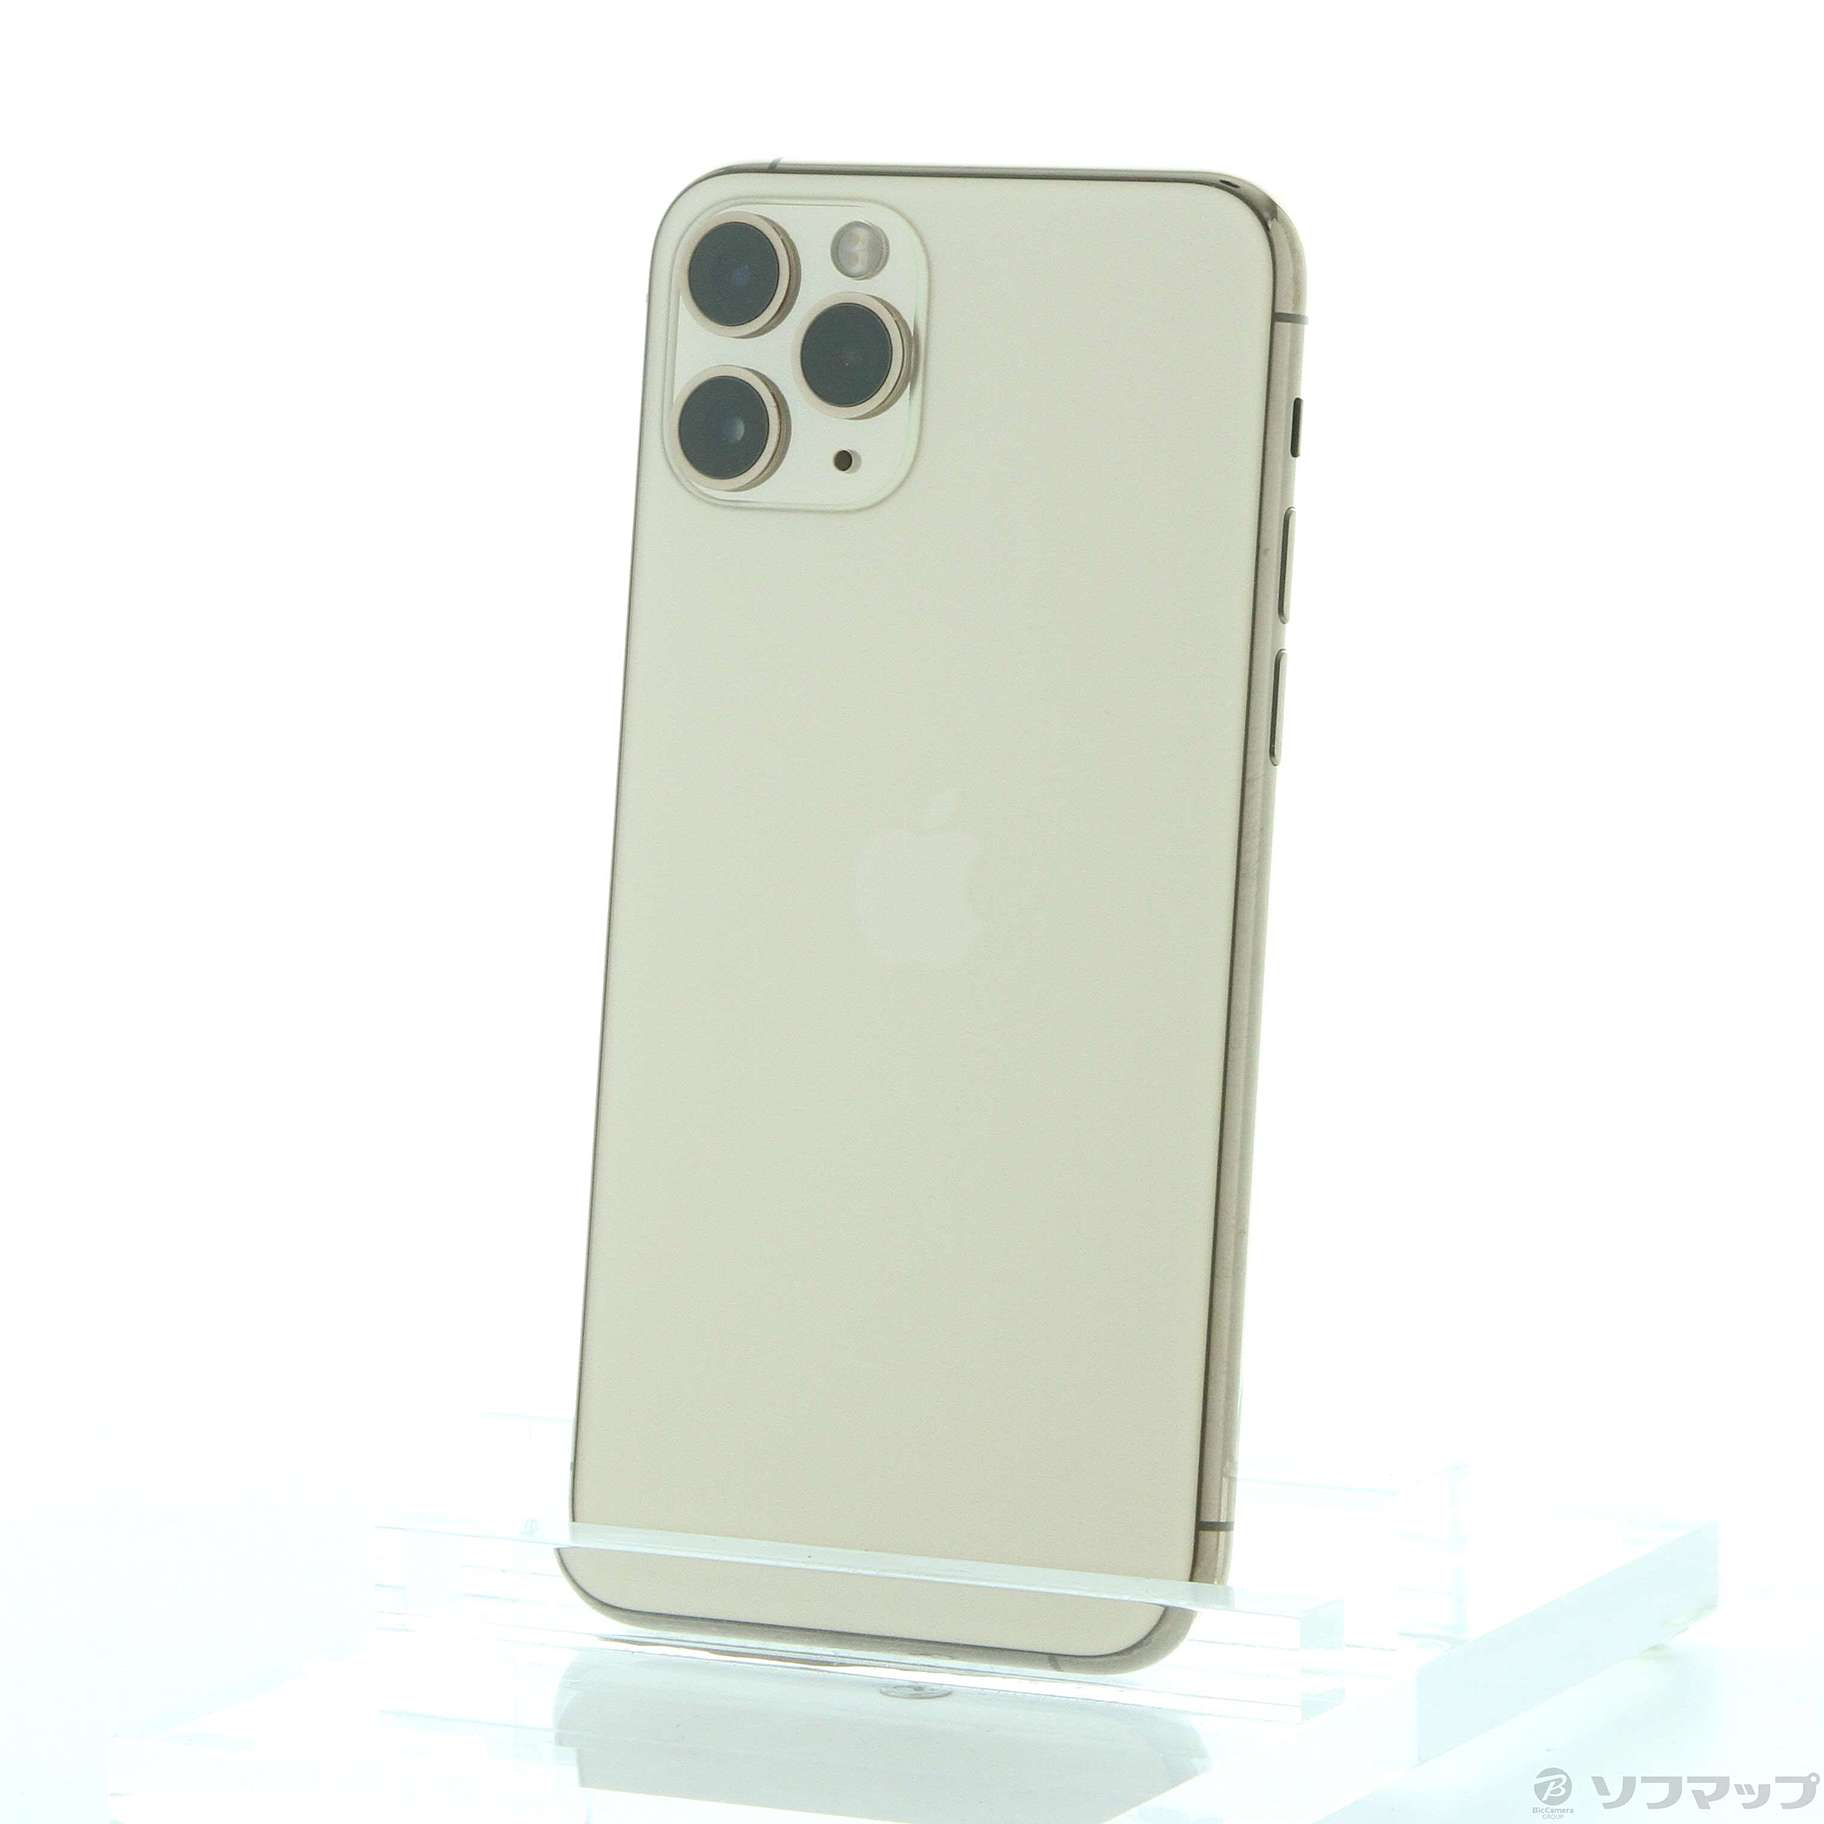 (中古)Apple iPhone11 Pro 64GB ゴールド MWC52J/A SIMフリー(349-ud)